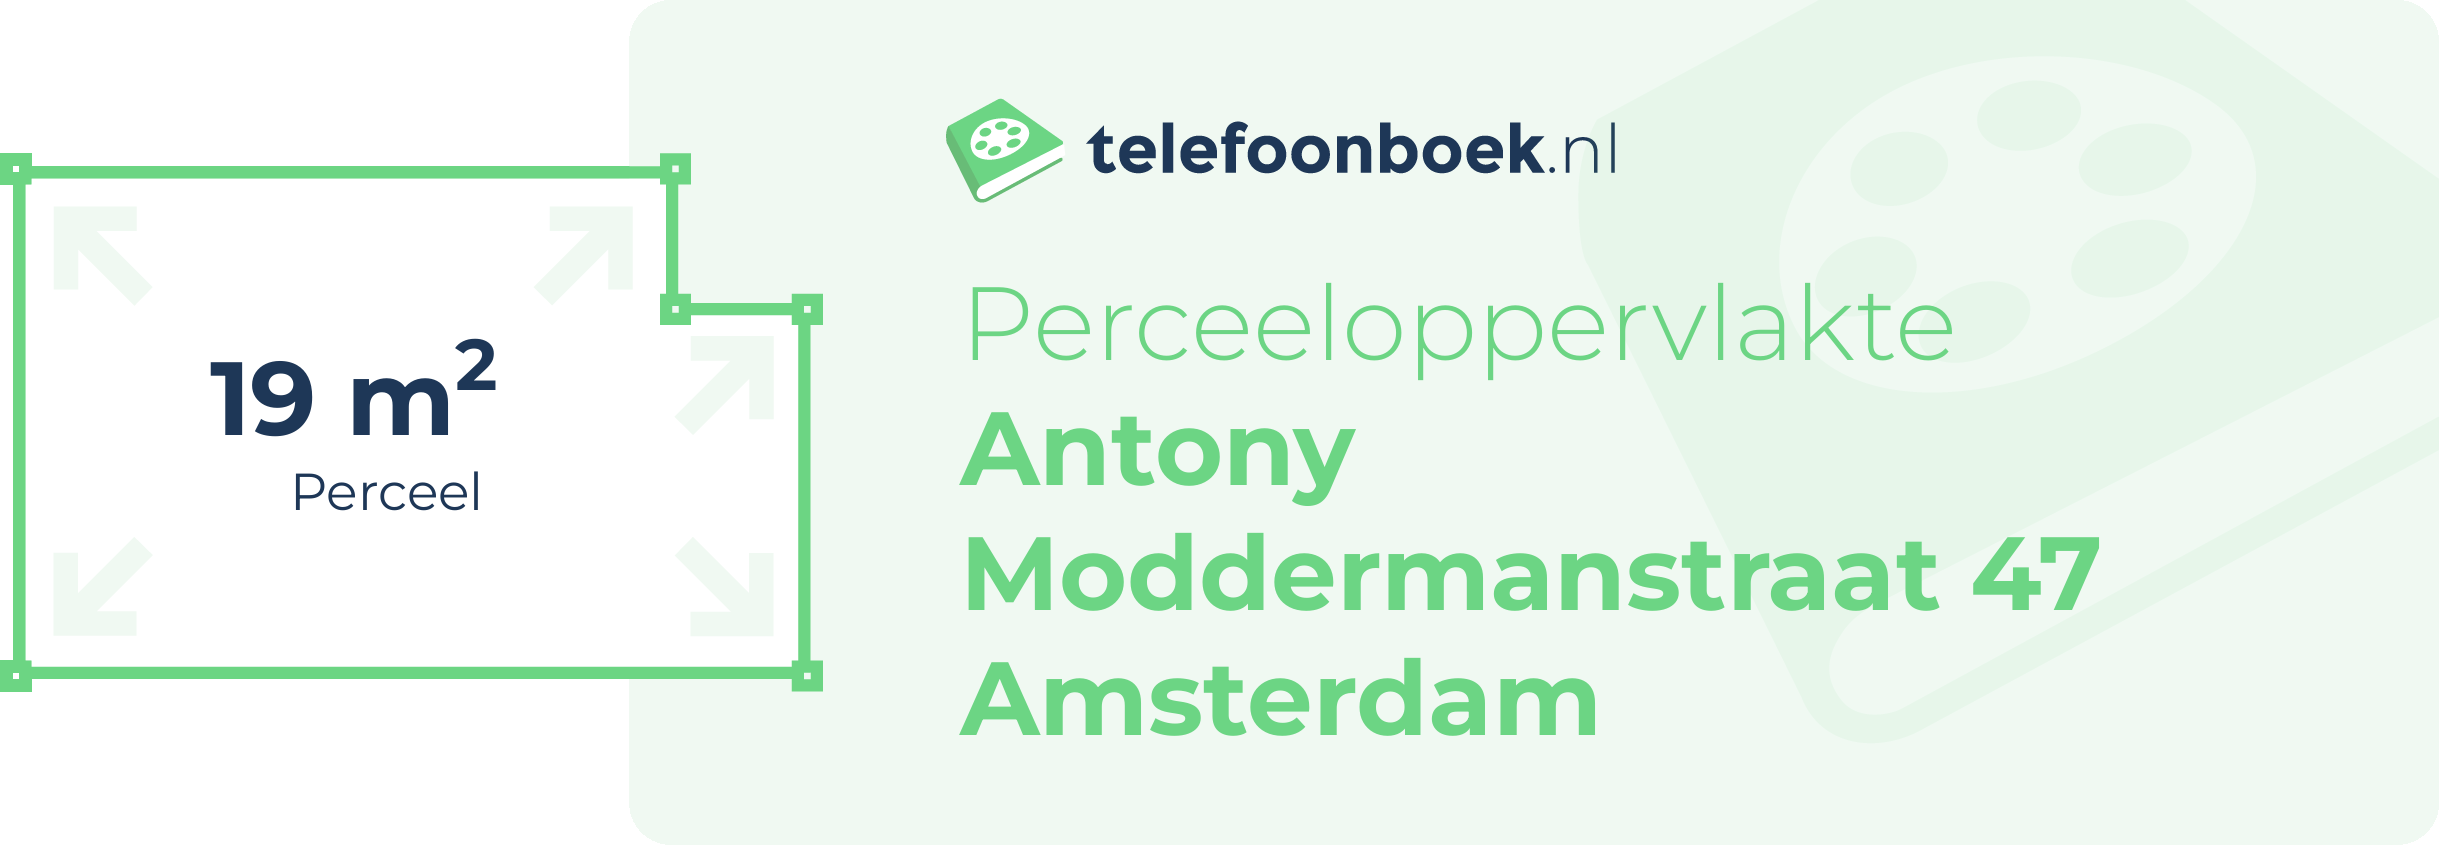 Perceeloppervlakte Antony Moddermanstraat 47 Amsterdam